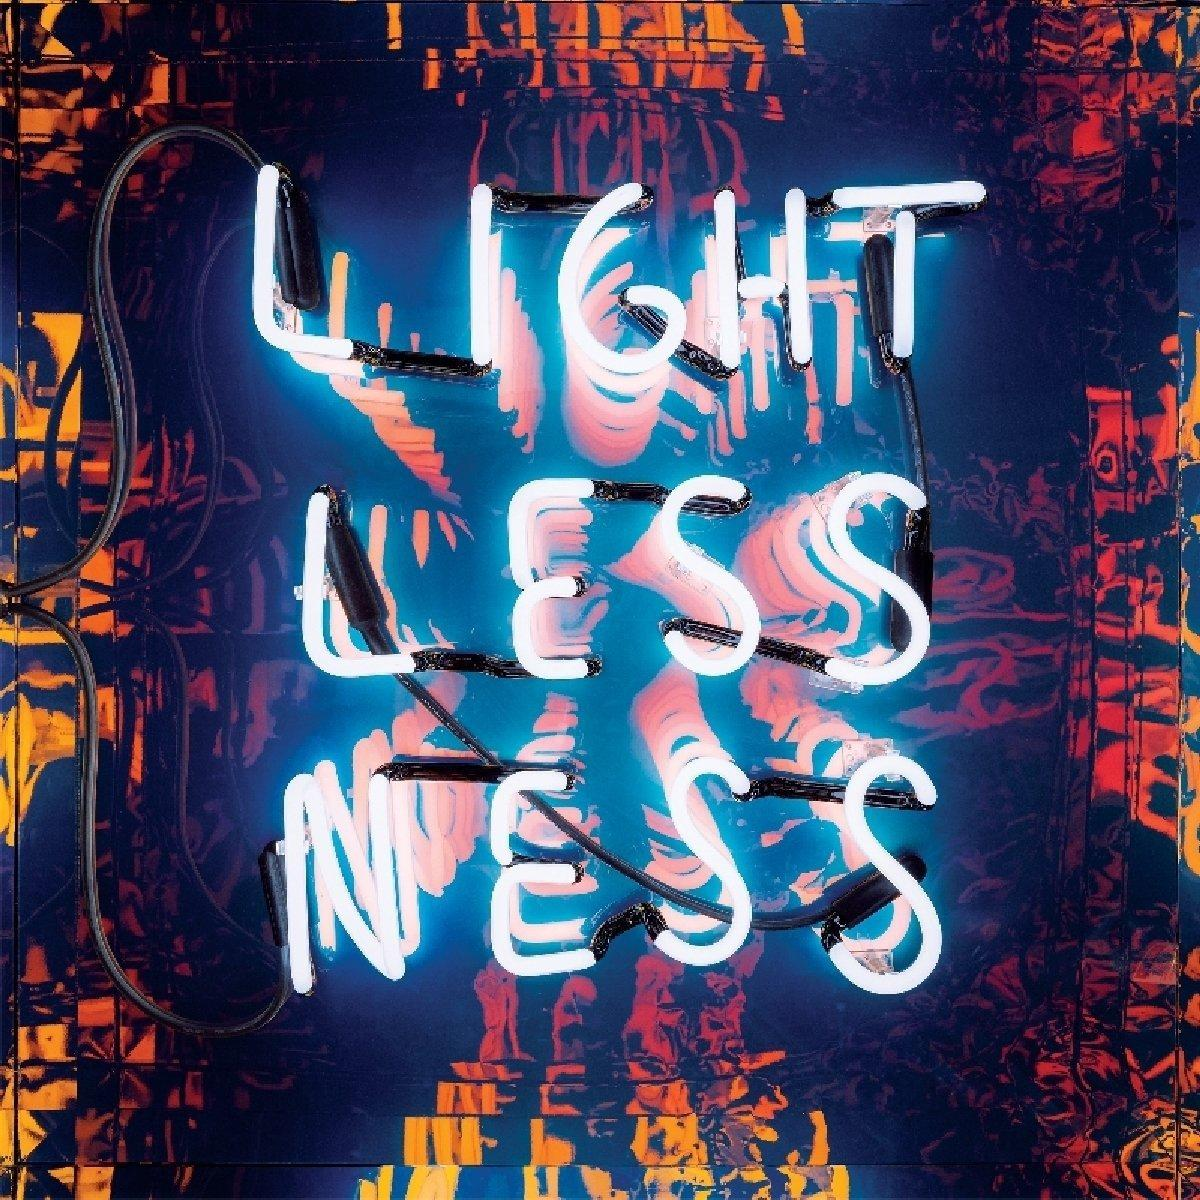 Maps & - Lightlessness Atlases Nothing - (Vinyl) Is